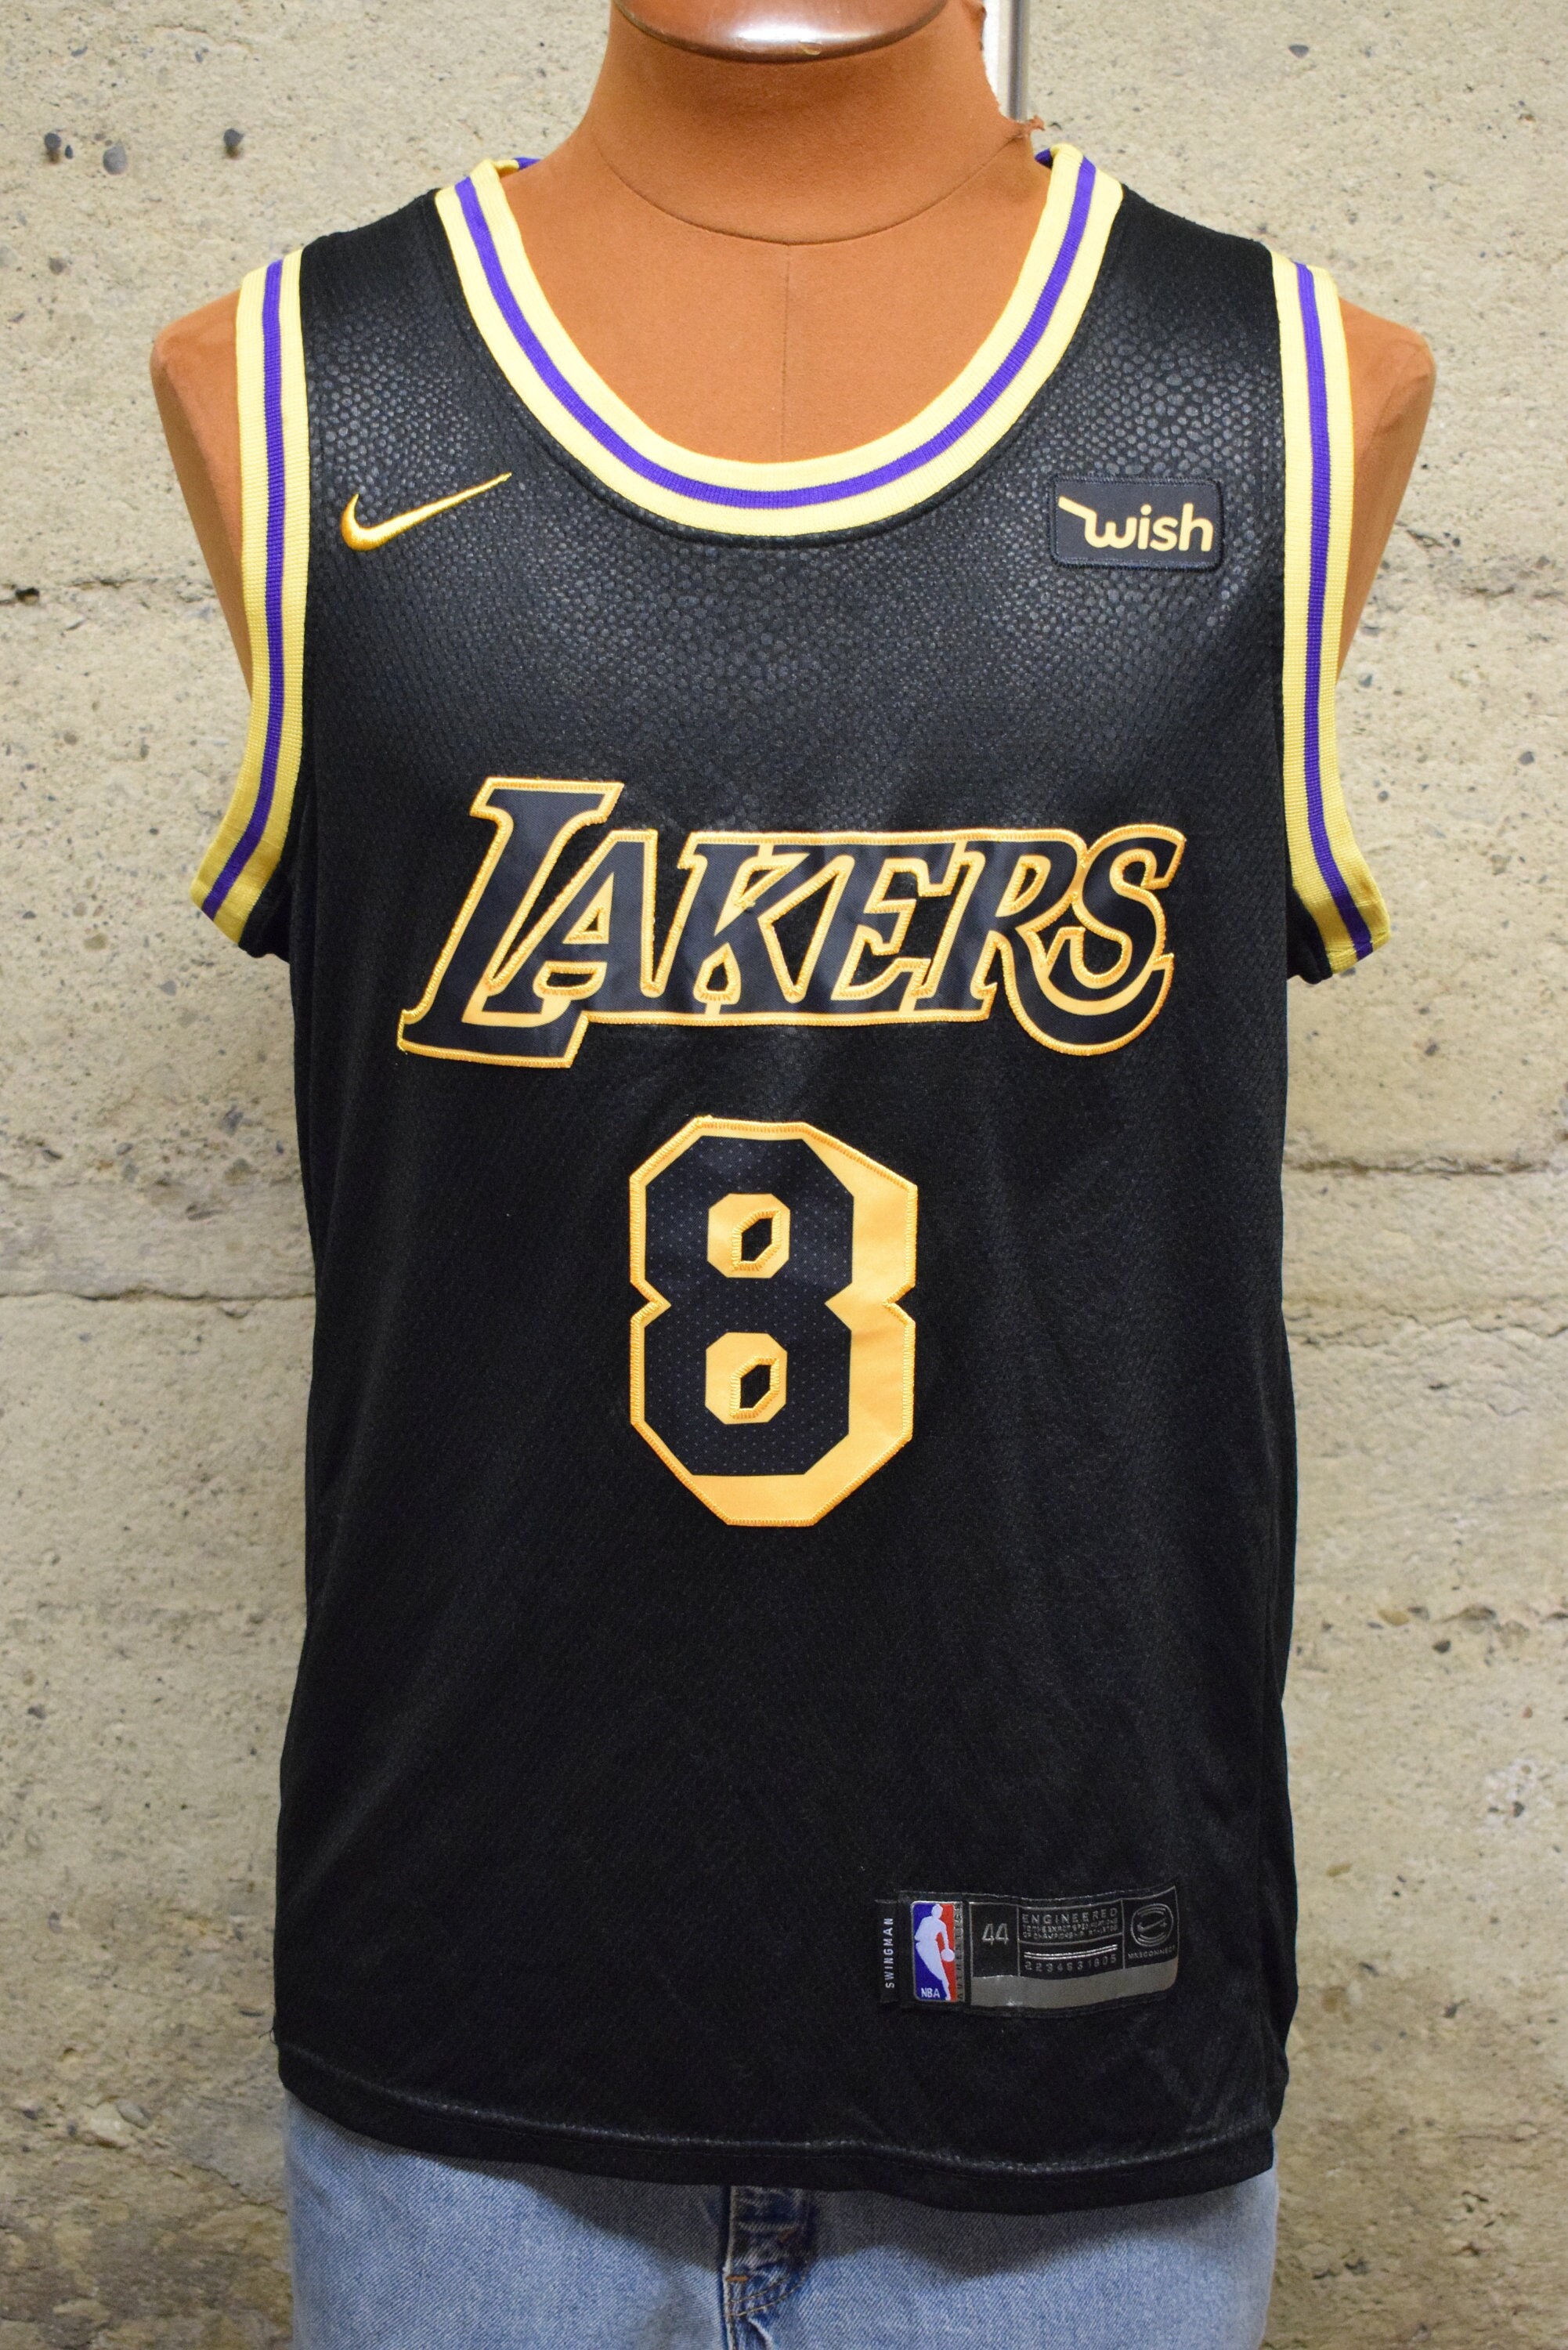 adidas, Shirts, Kobe Bryant La Lakers Gold On Black Jersey 24 Mamba  Basketball Nba Rare